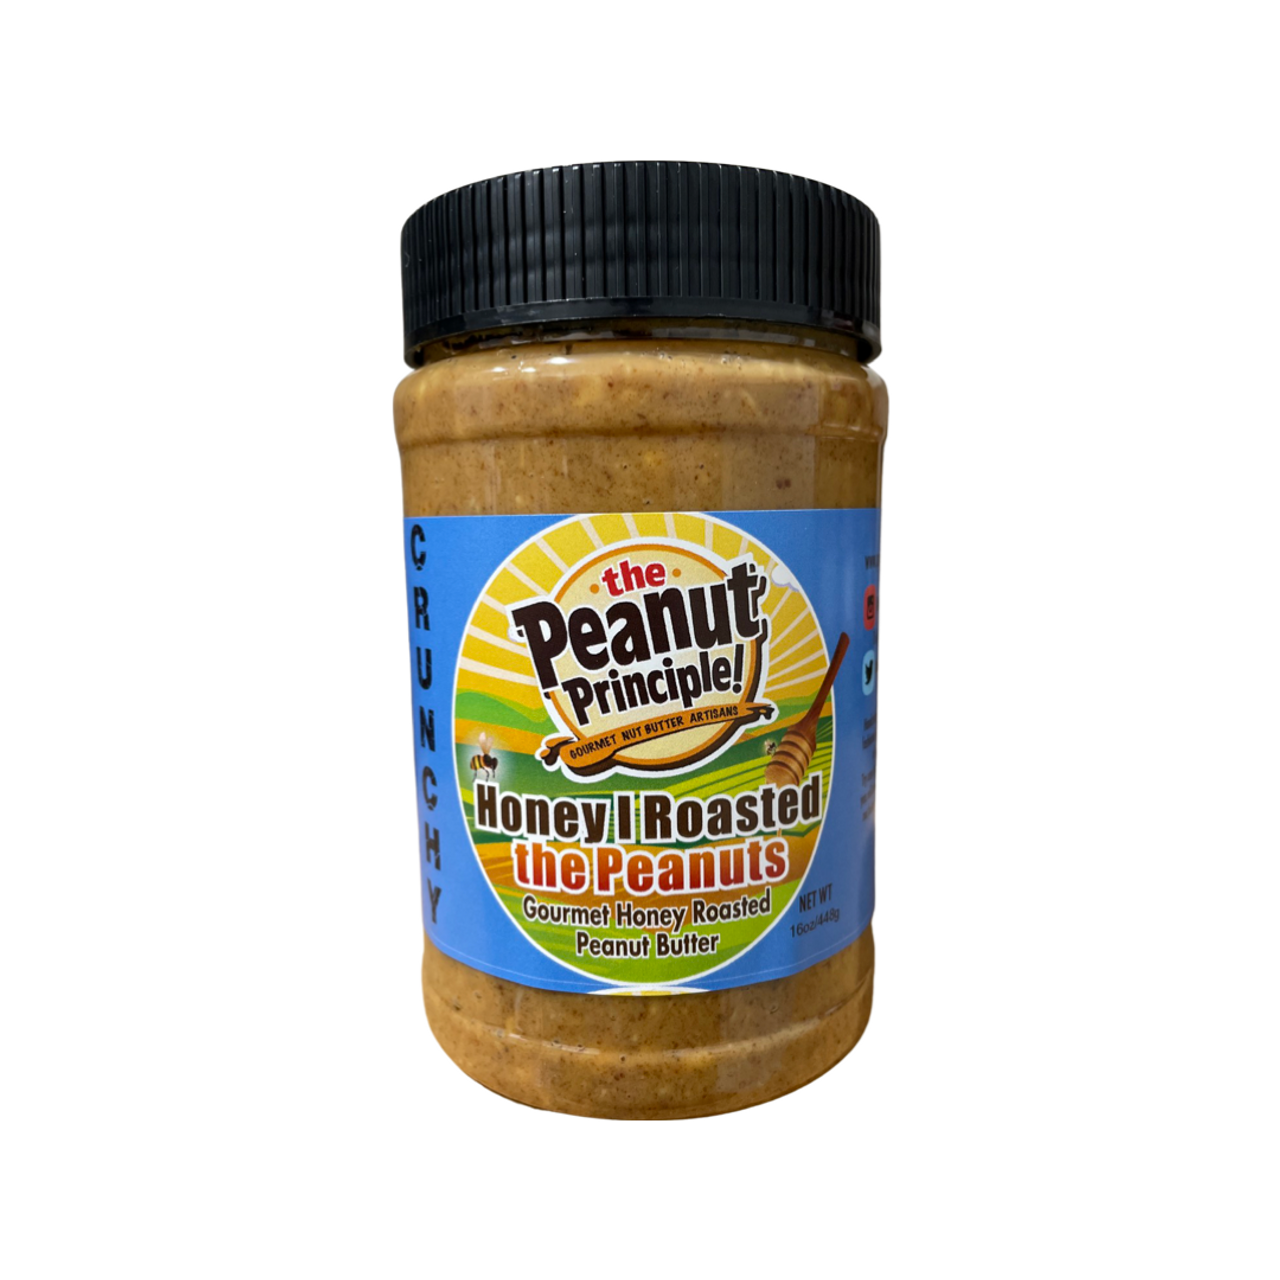 Crunchy Peanut Butter - GOOD GOOD®